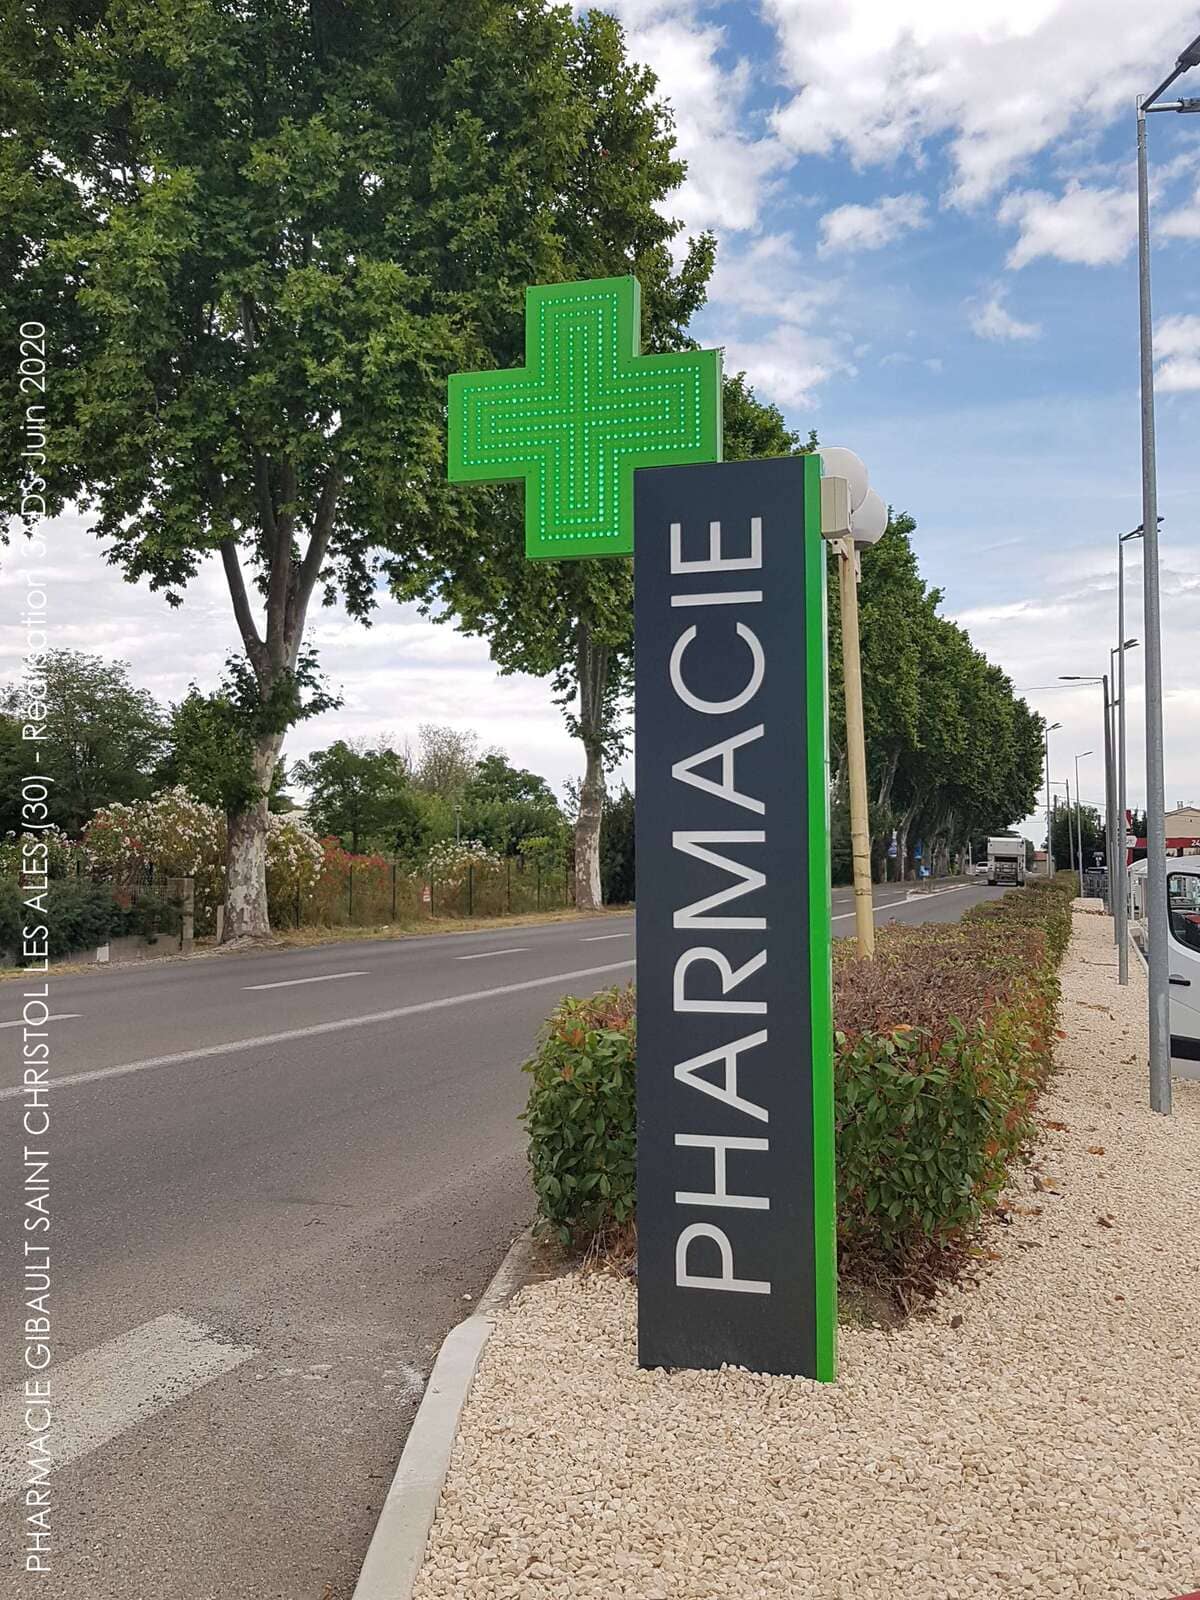 3ADS Designe espace - Ru00e9alisation - Pharmacie Gibault Transfert de pharmacie à Saint Christol les Ales (30)